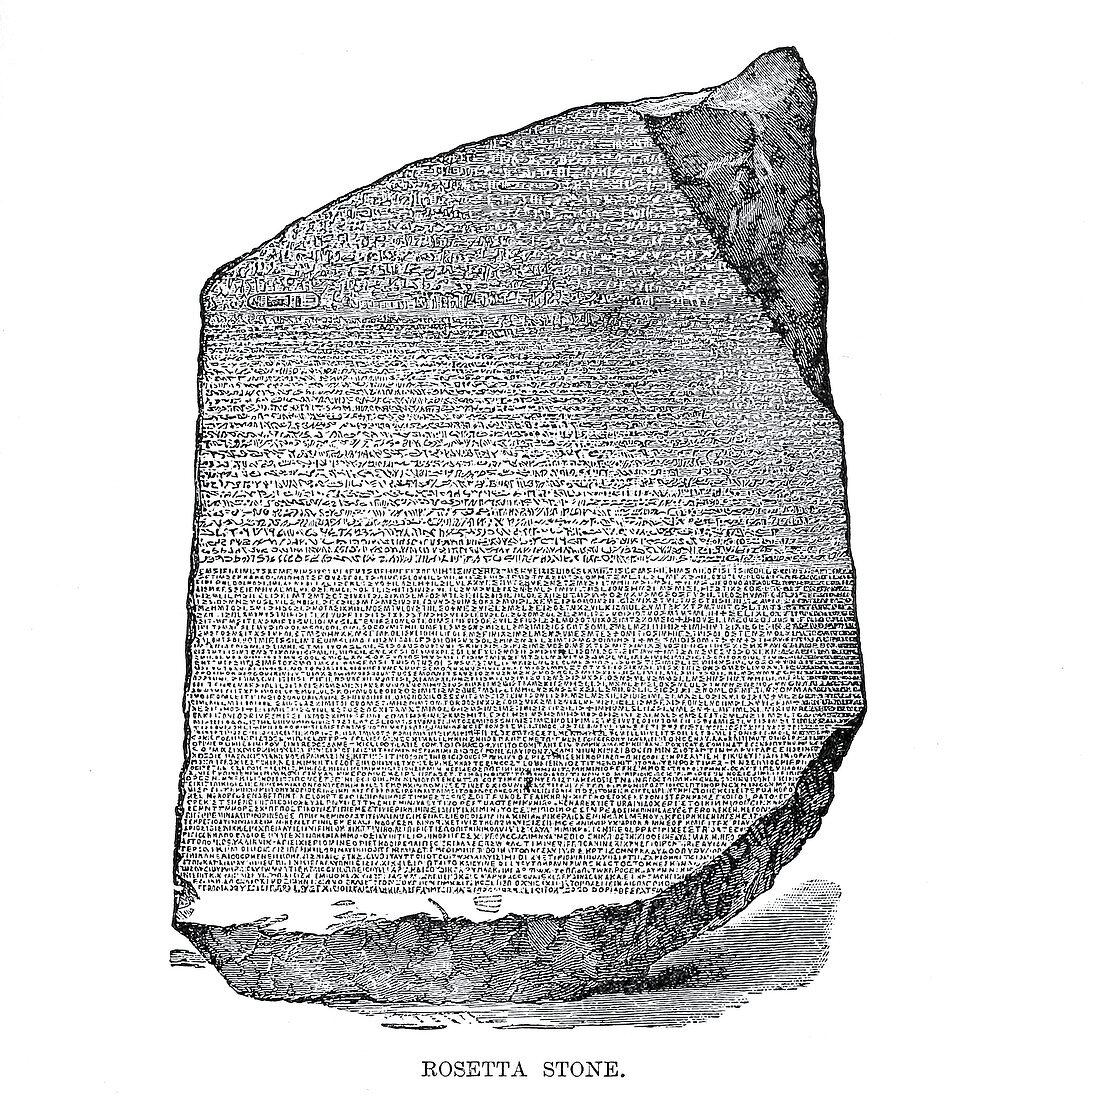 Rosetta Stone, 19th century illustration